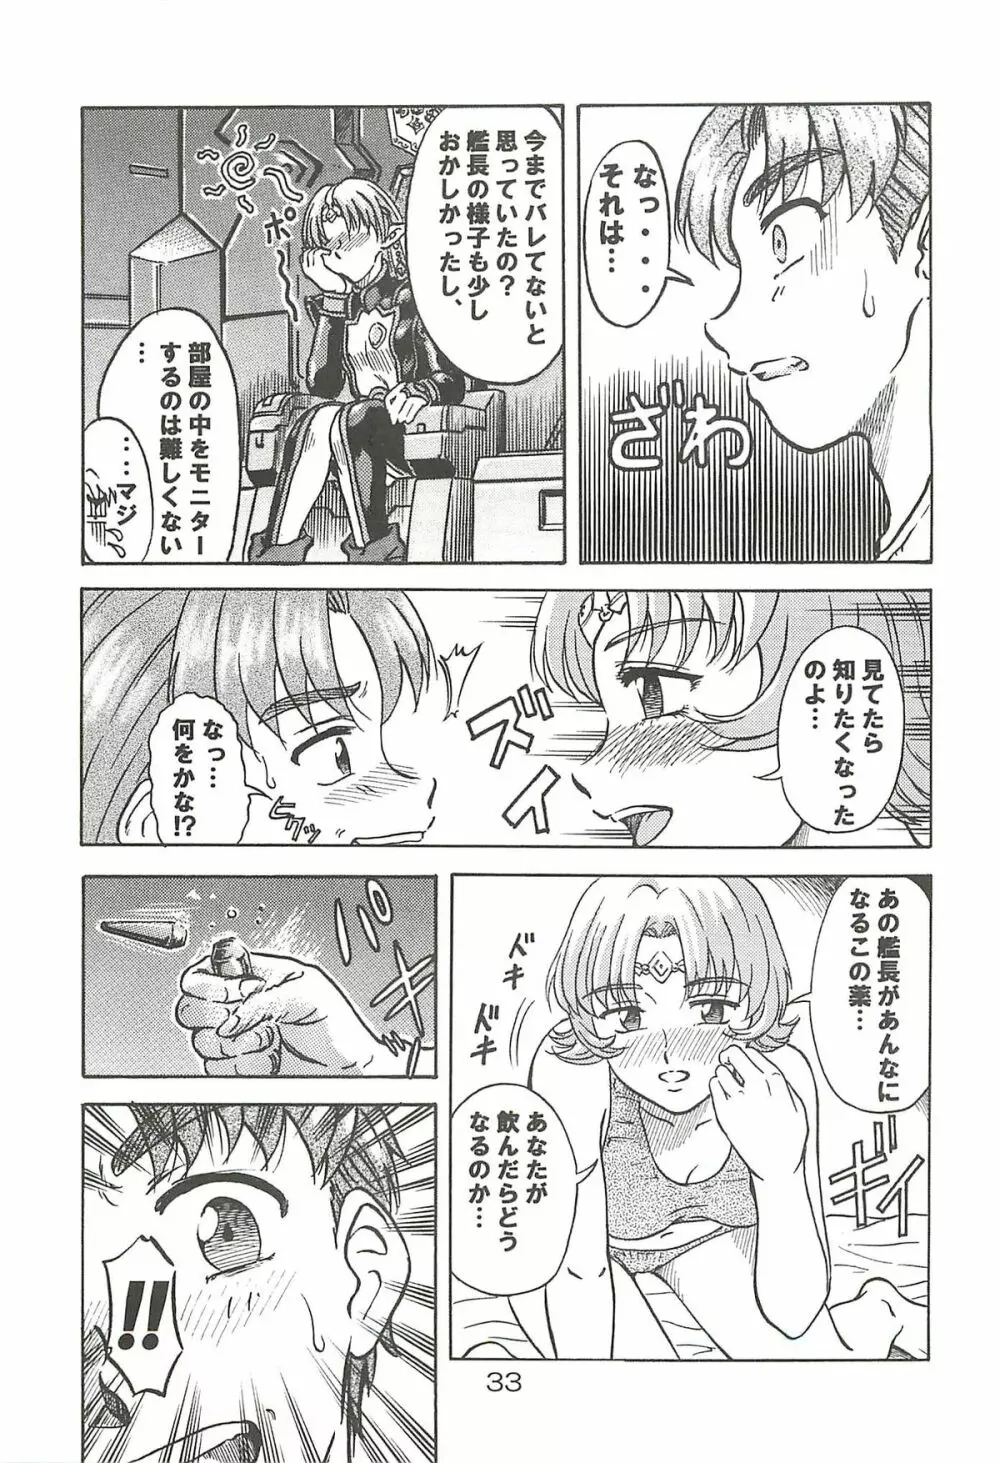 追放覚悟 Special edition Phase1 - page32